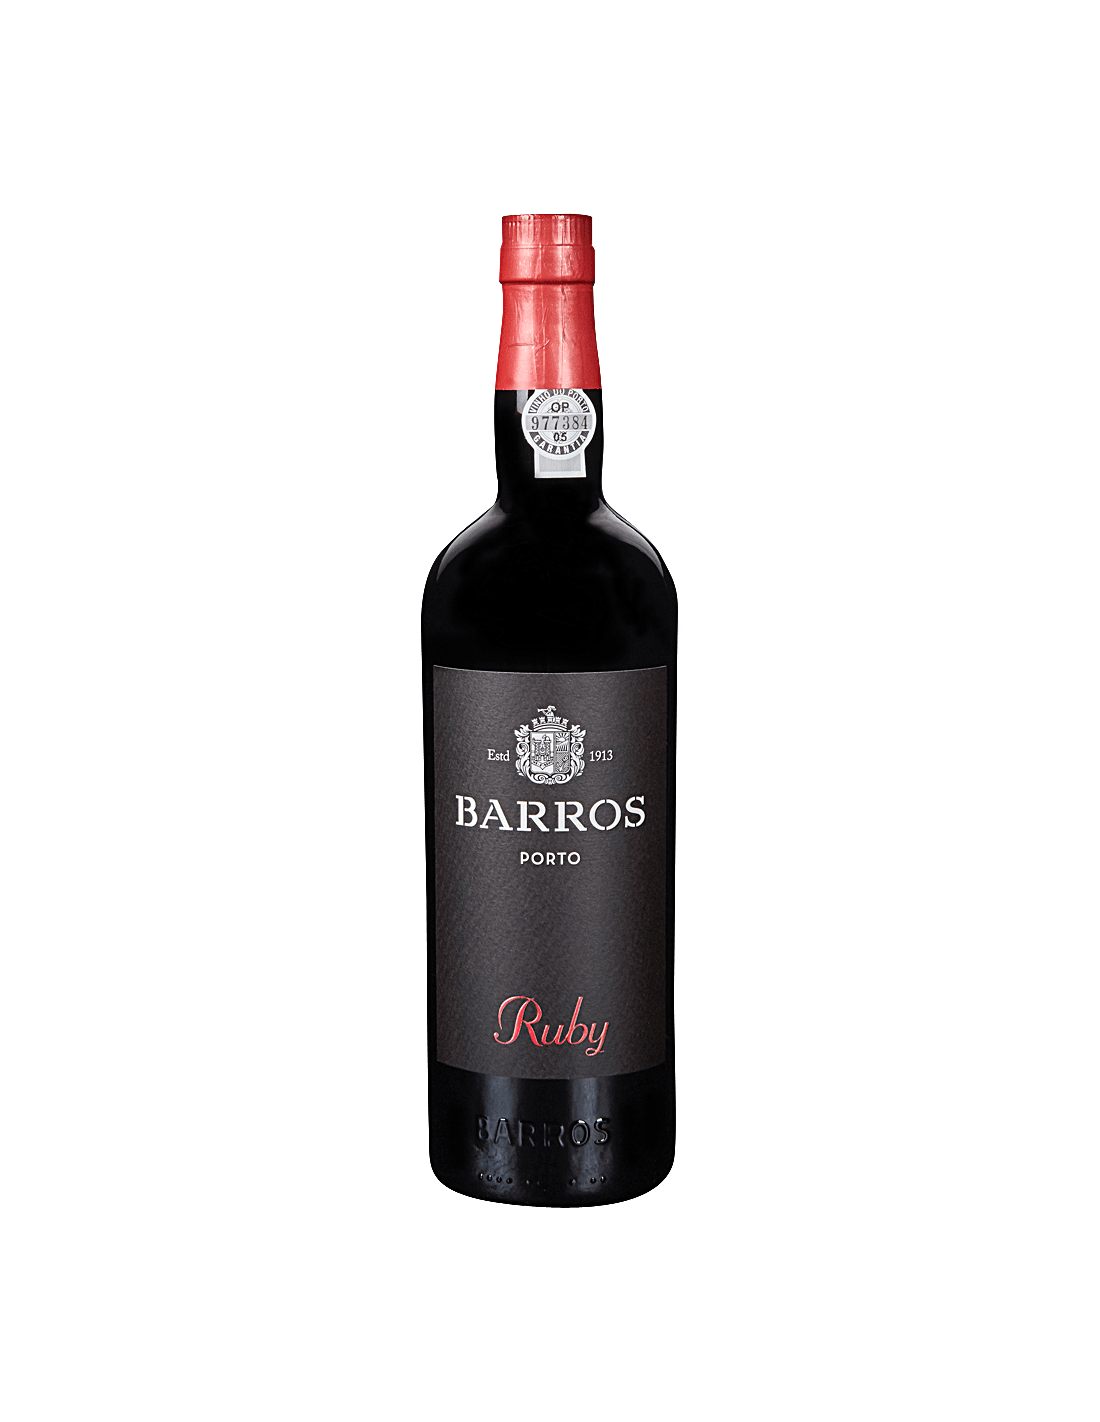 Vin porto rosu, Barros Ruby, 0.75L, 20% alc., Portugalia alcooldiscount.ro